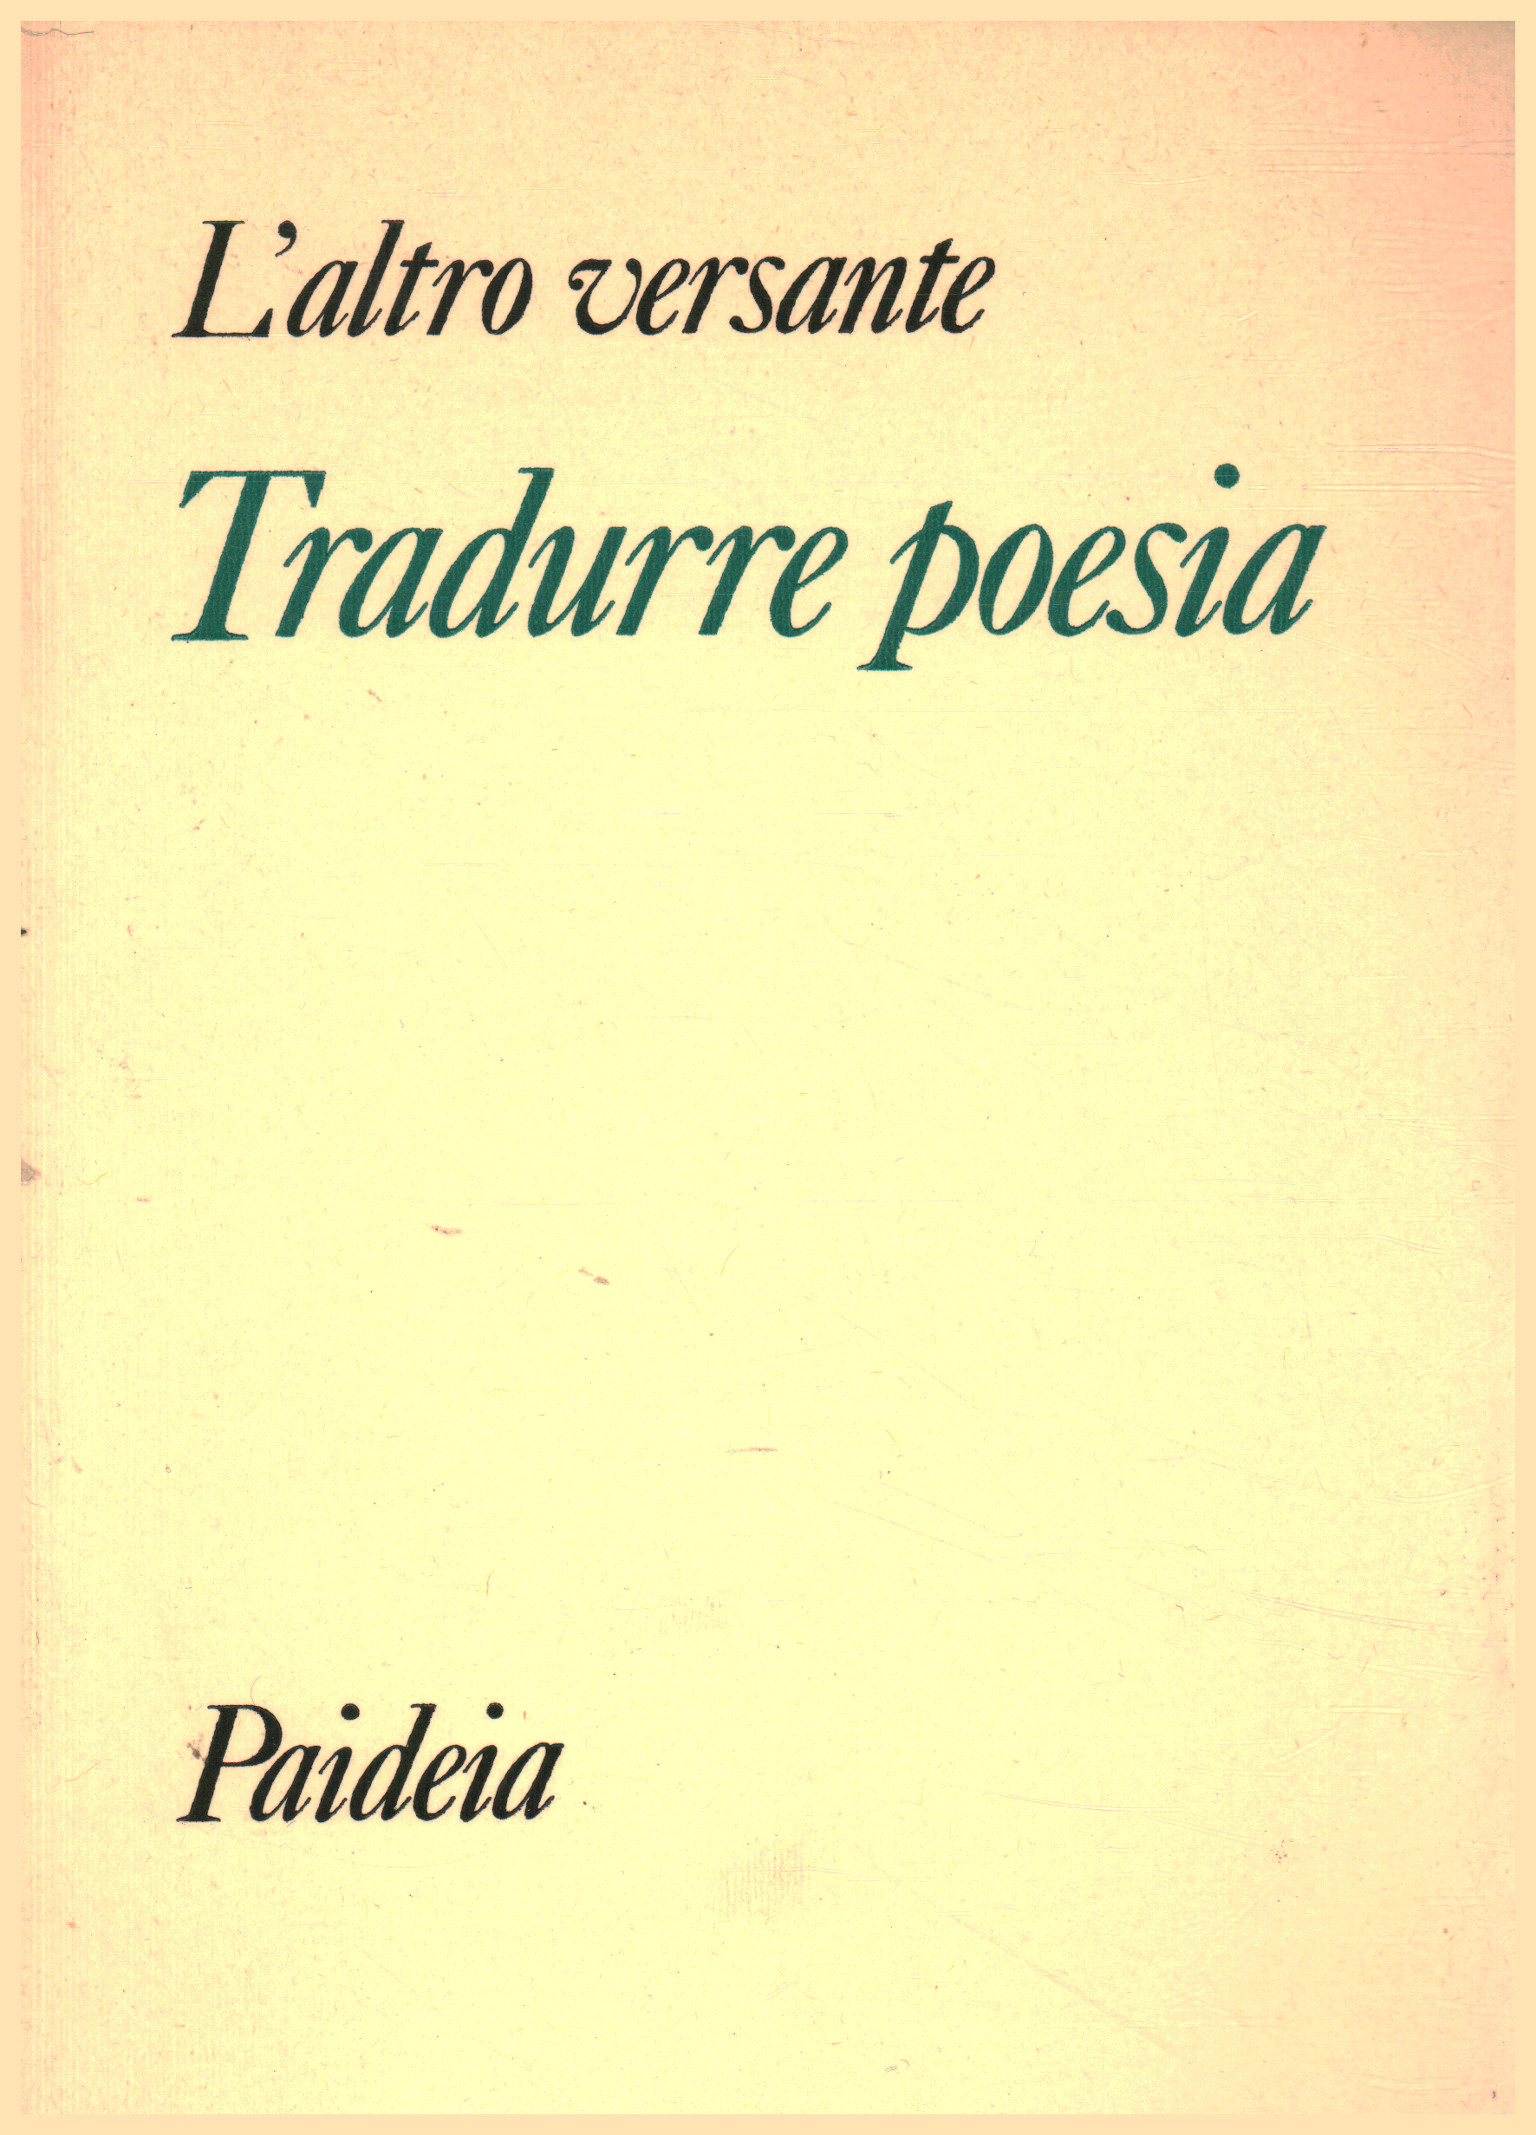 Traduction de poésie, Rosita Copioli